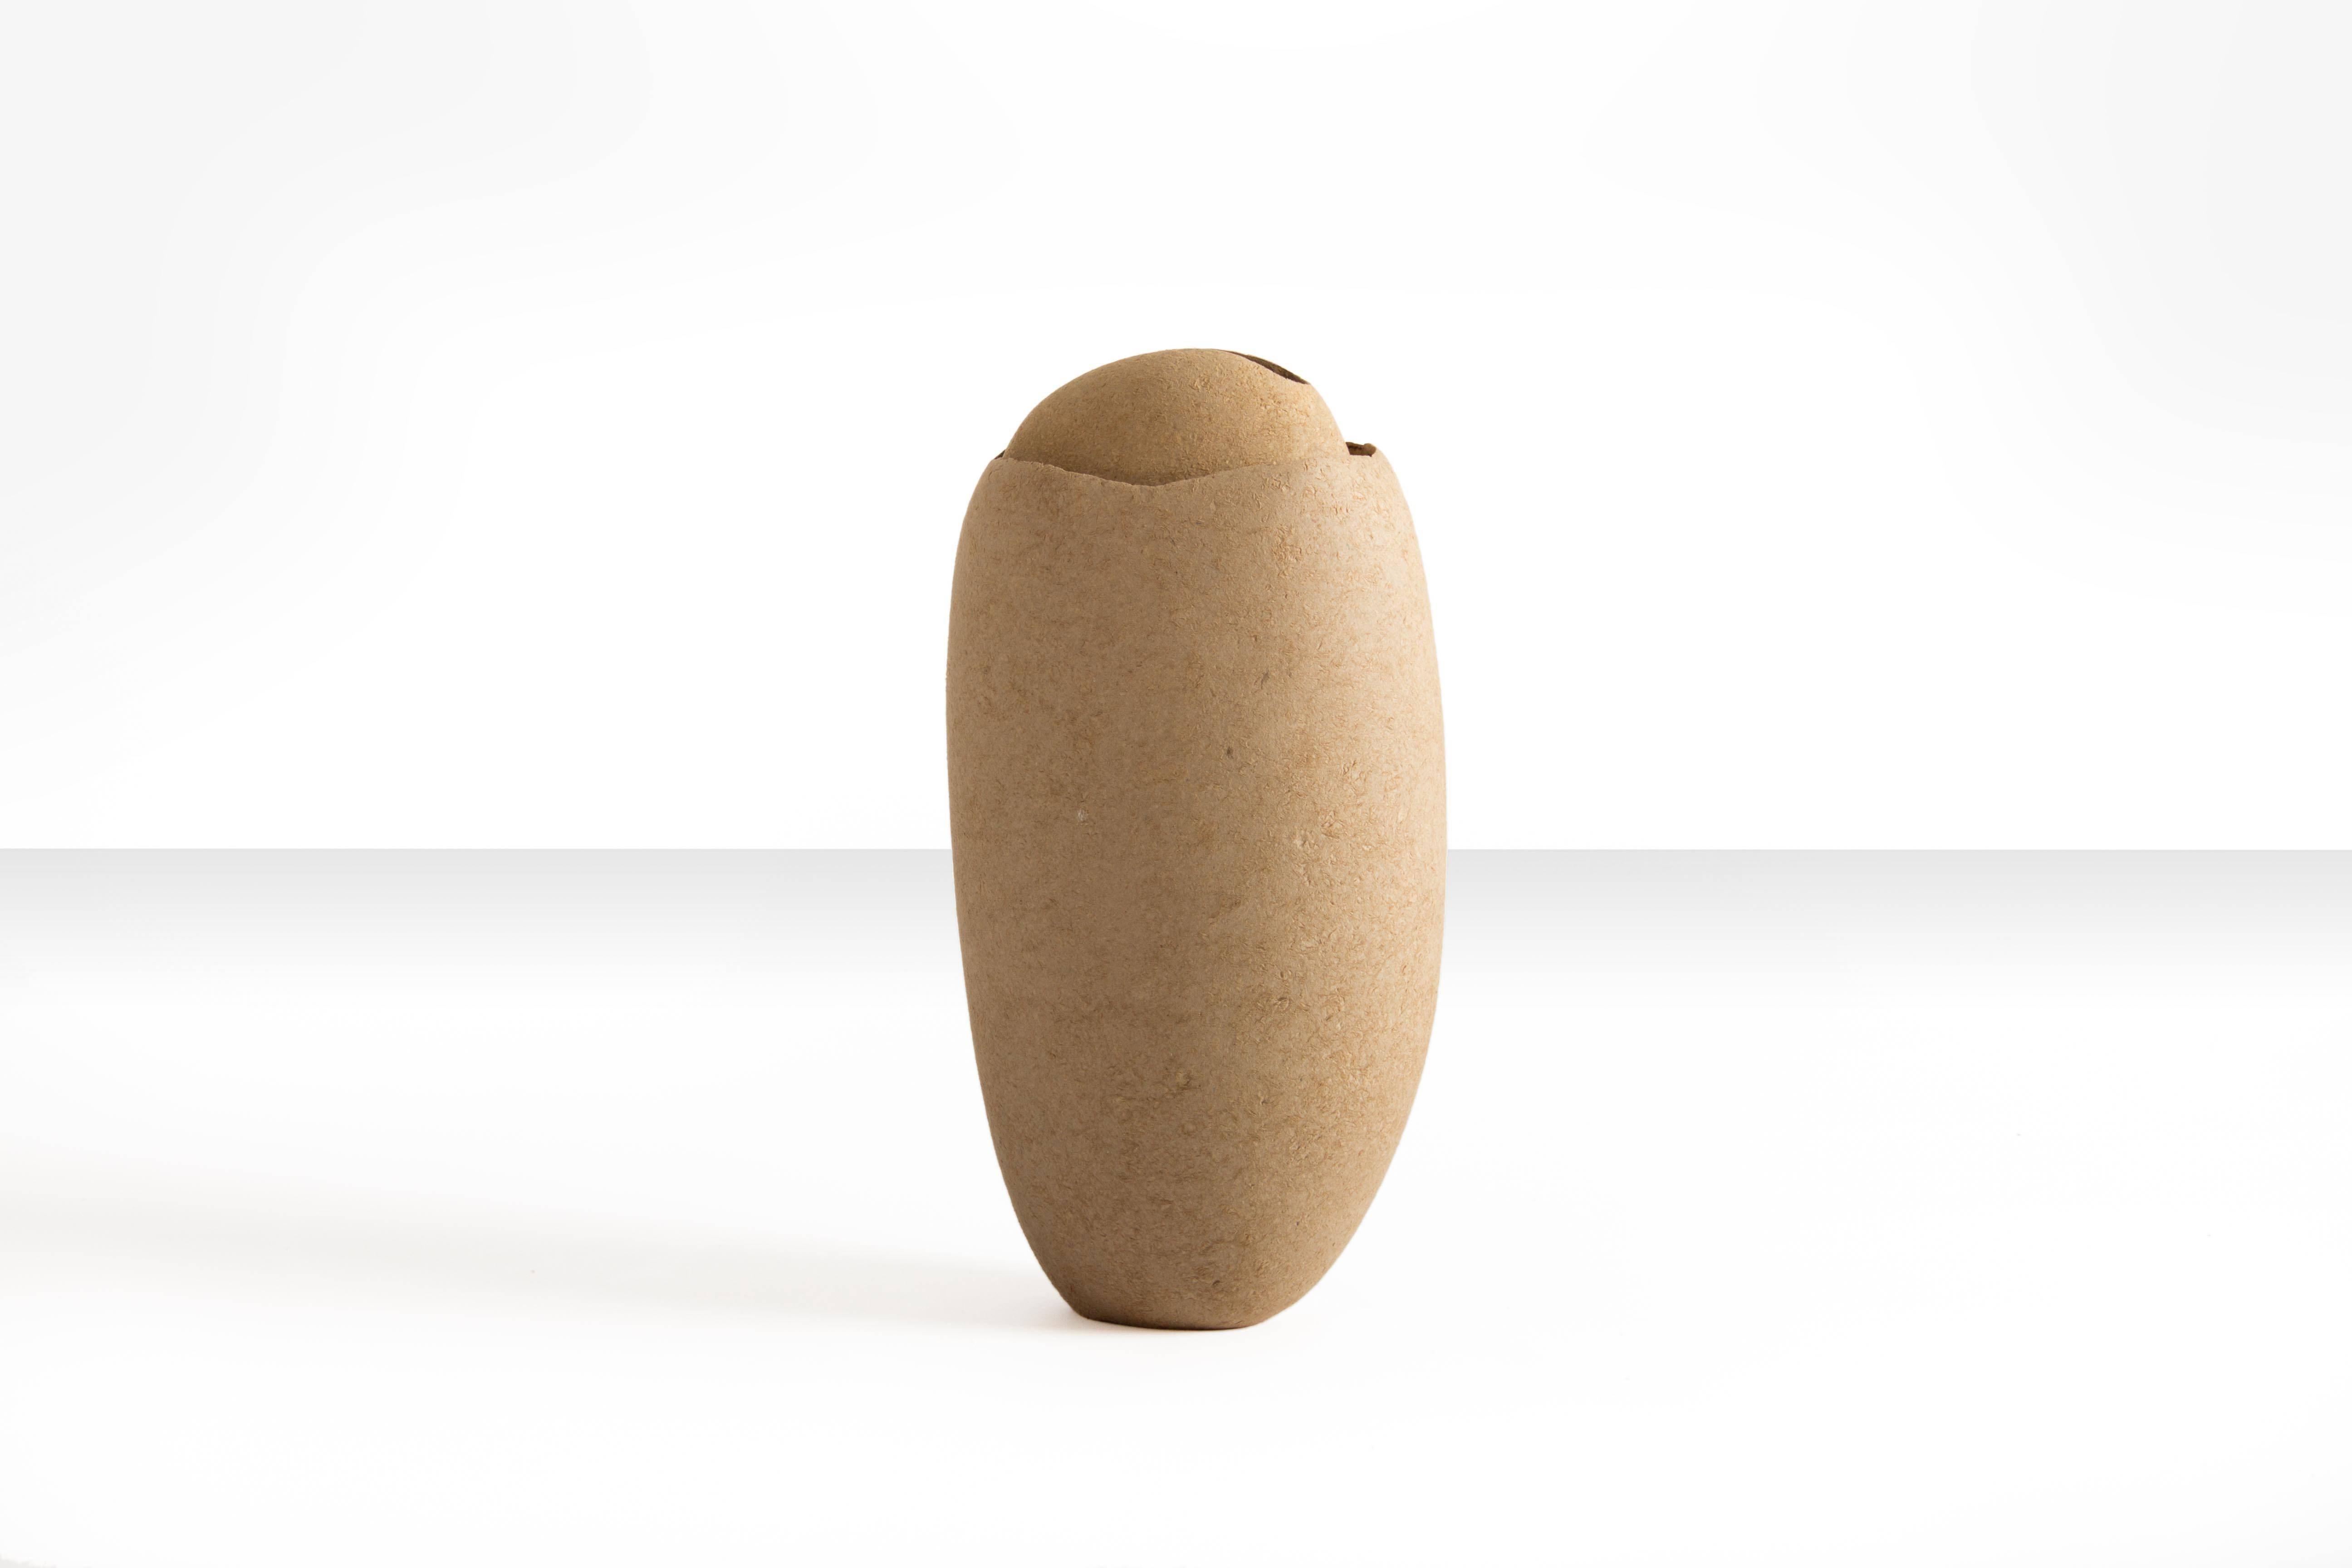 Vase en coquillage organique de l'artiste contemporain Domingos Tótora. Fabriqué en carton recyclé.

Domingo Tótora crée des objets et des sculptures où la beauté est indissociable de la fonction, en s'emparant d'objets courants de la vie